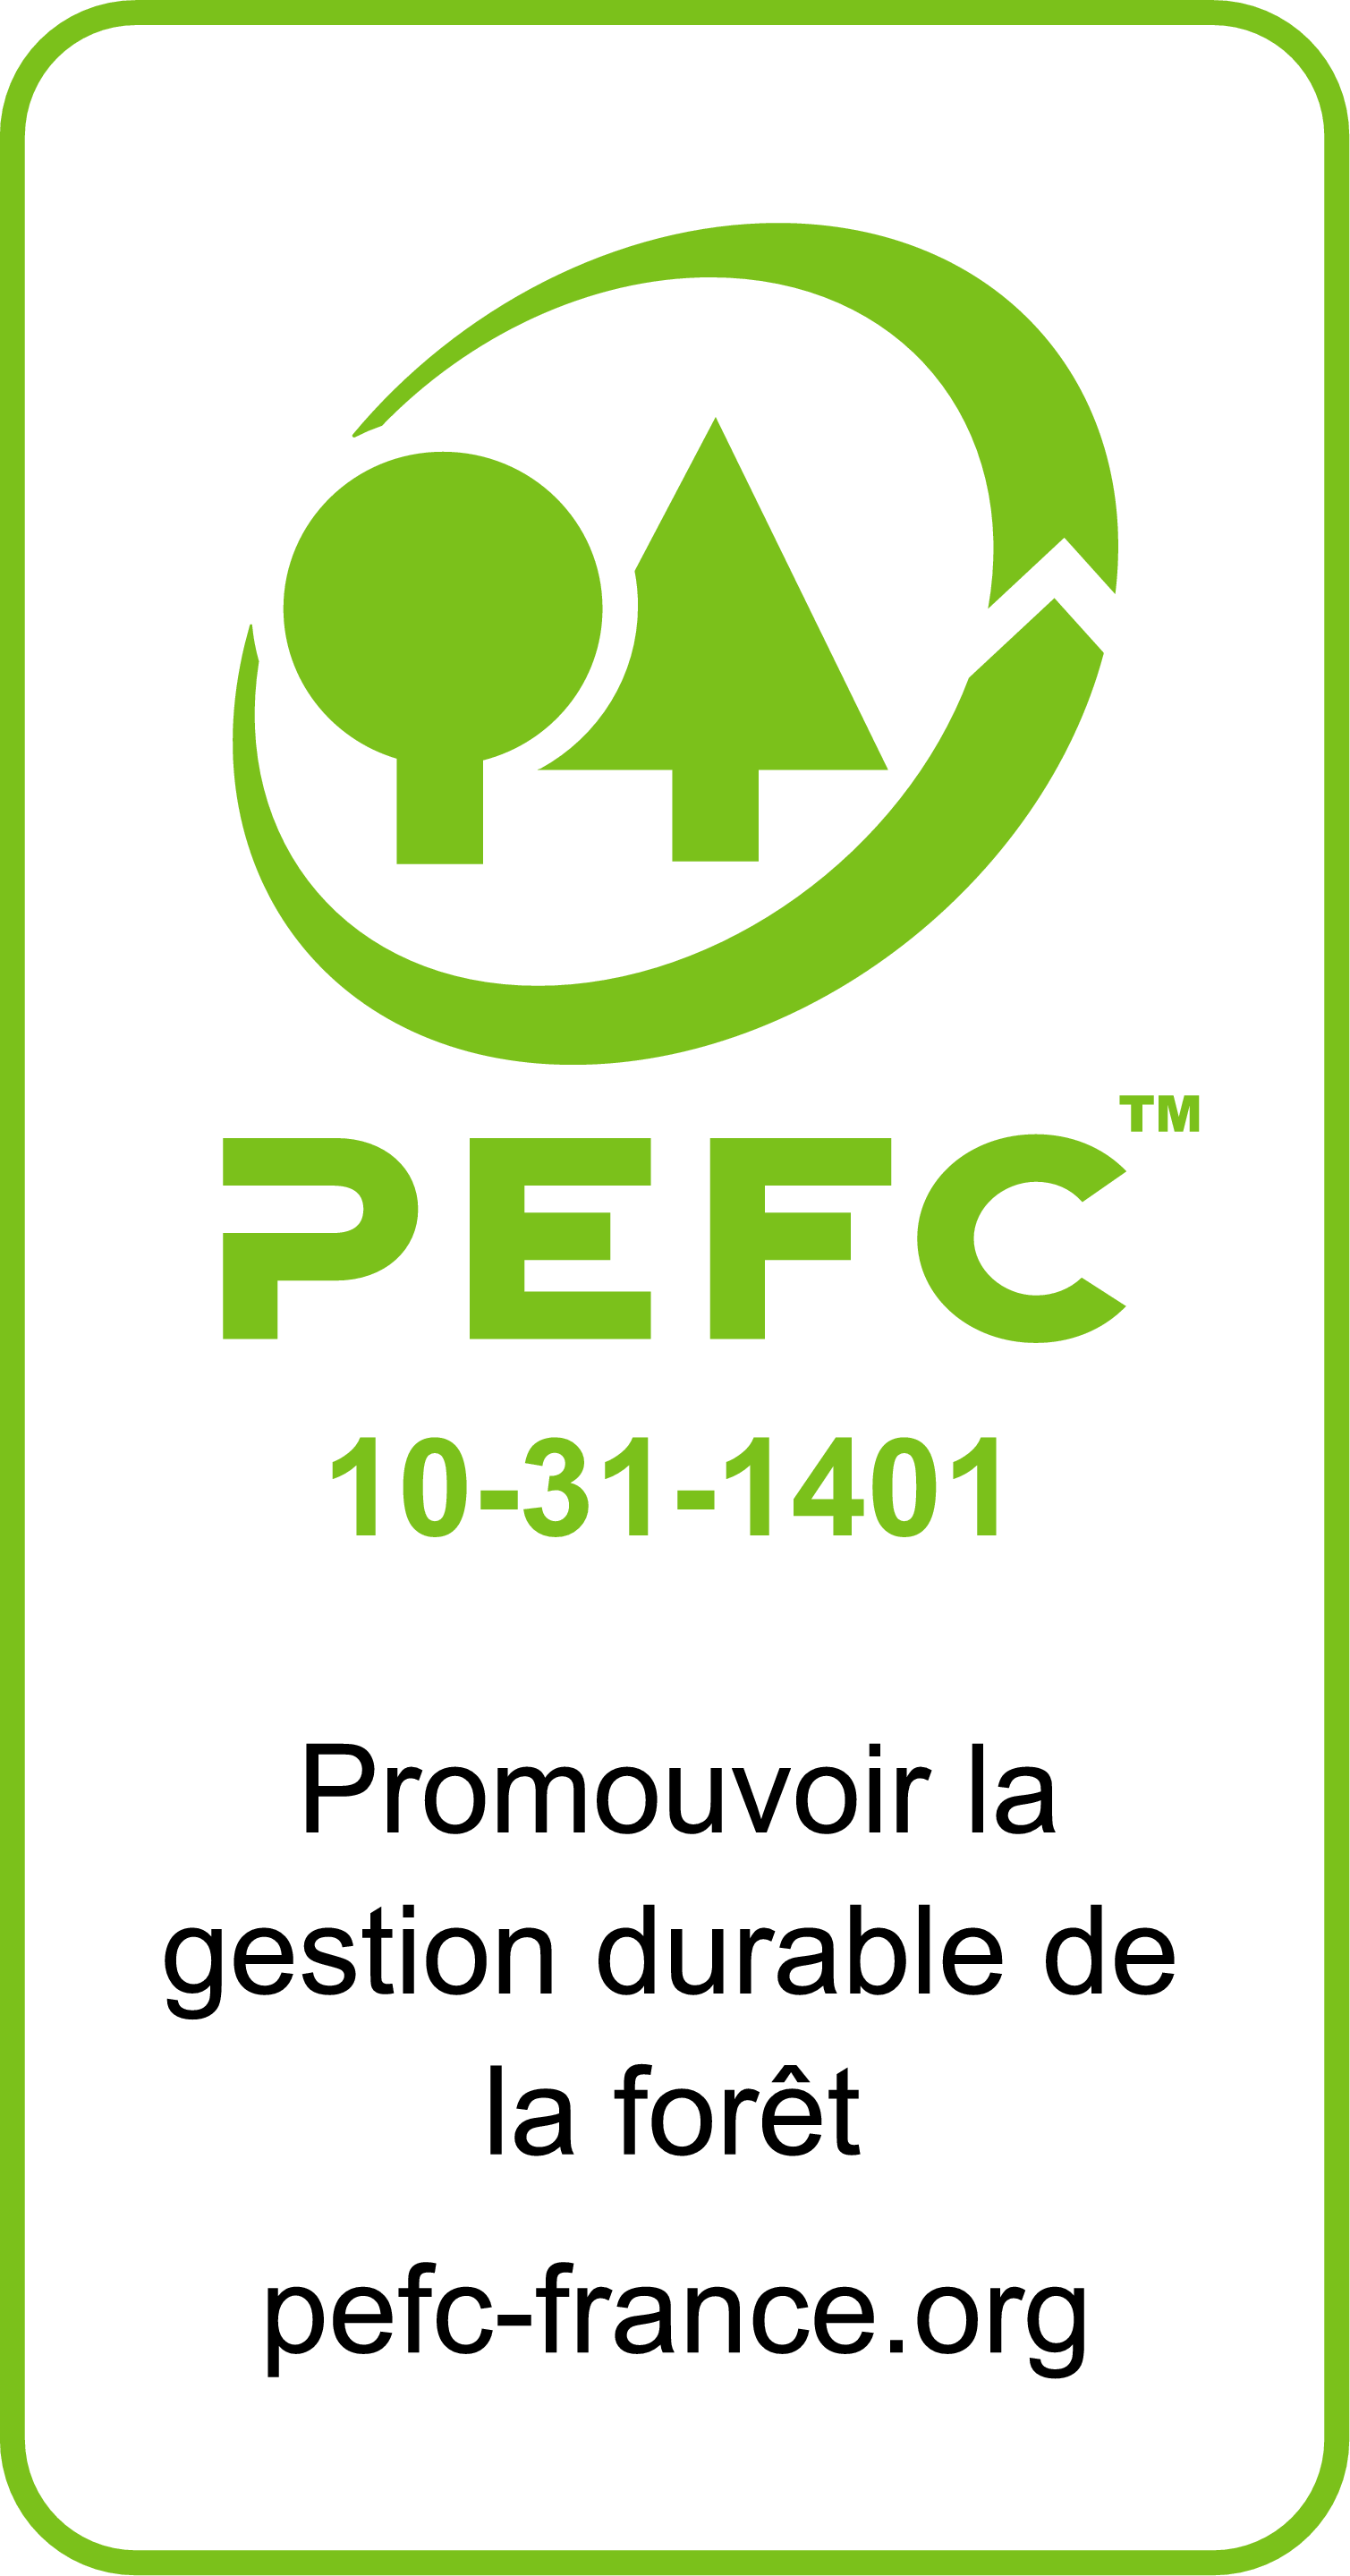 pefc-logo_2017.png